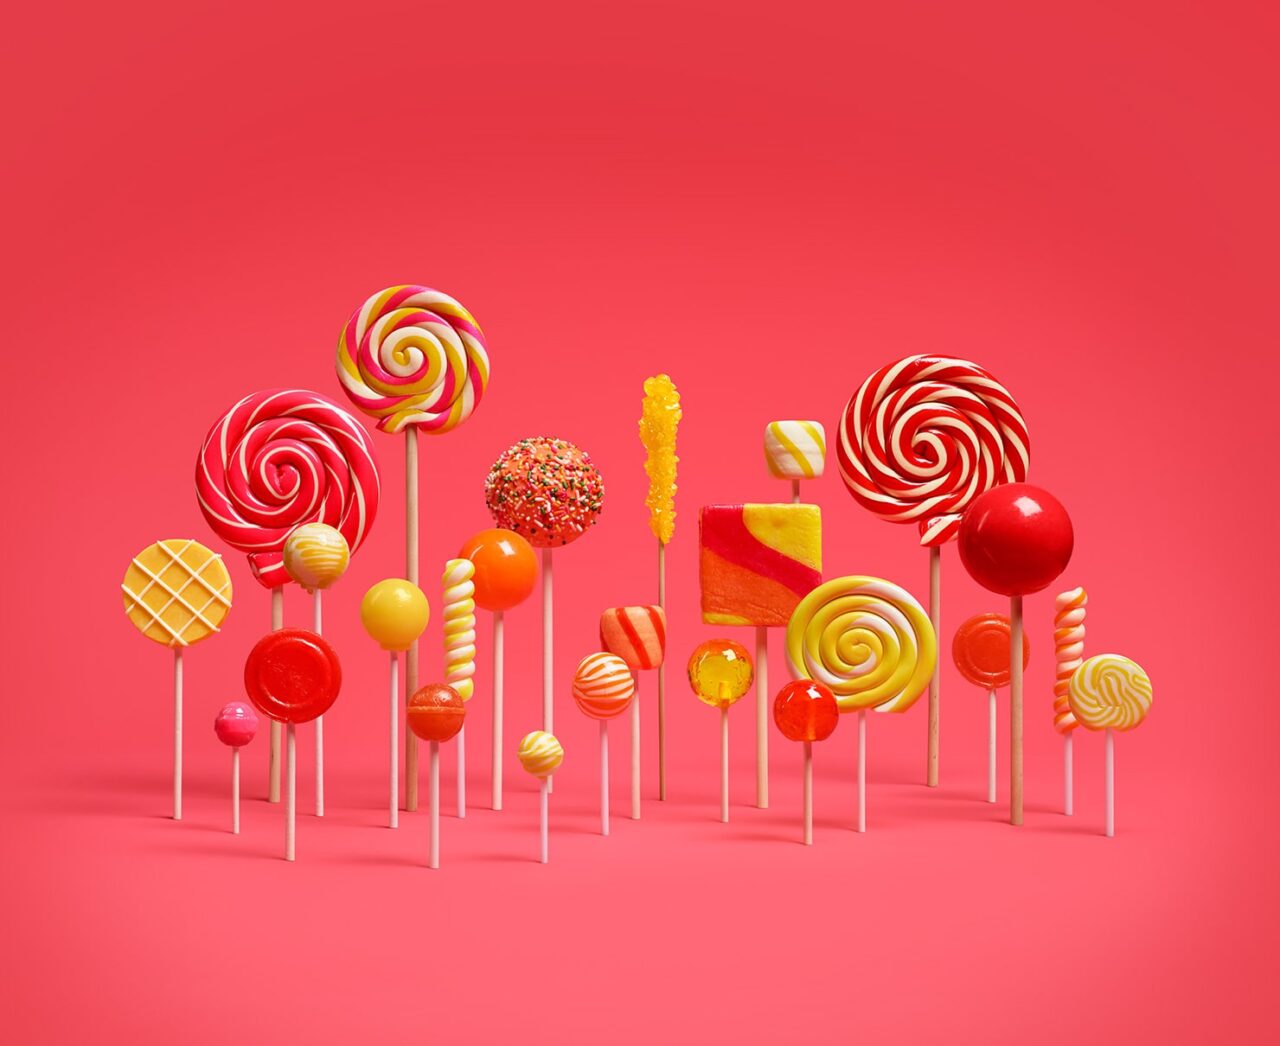 Kolorowe lizaki i cukierki różnych rozmiarów i kształtów ustawione na czerwonym tle.